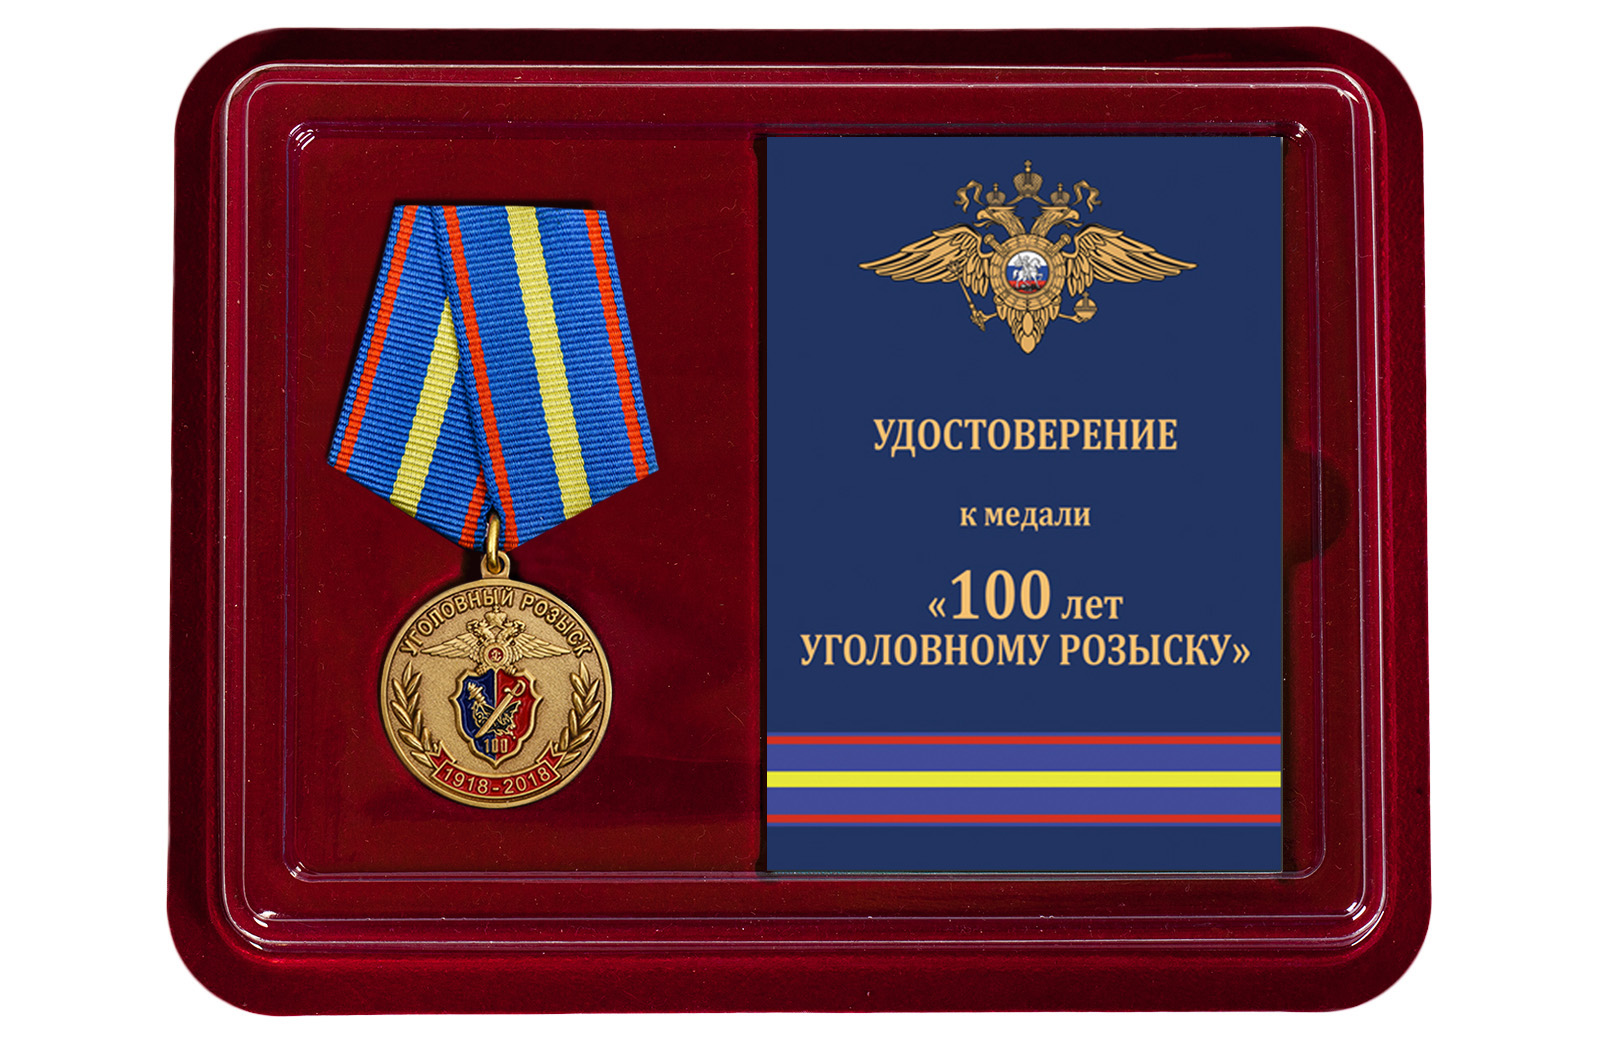 Купить медаль 100 лет Уголовному розыску МВД РФ по лучшей цене